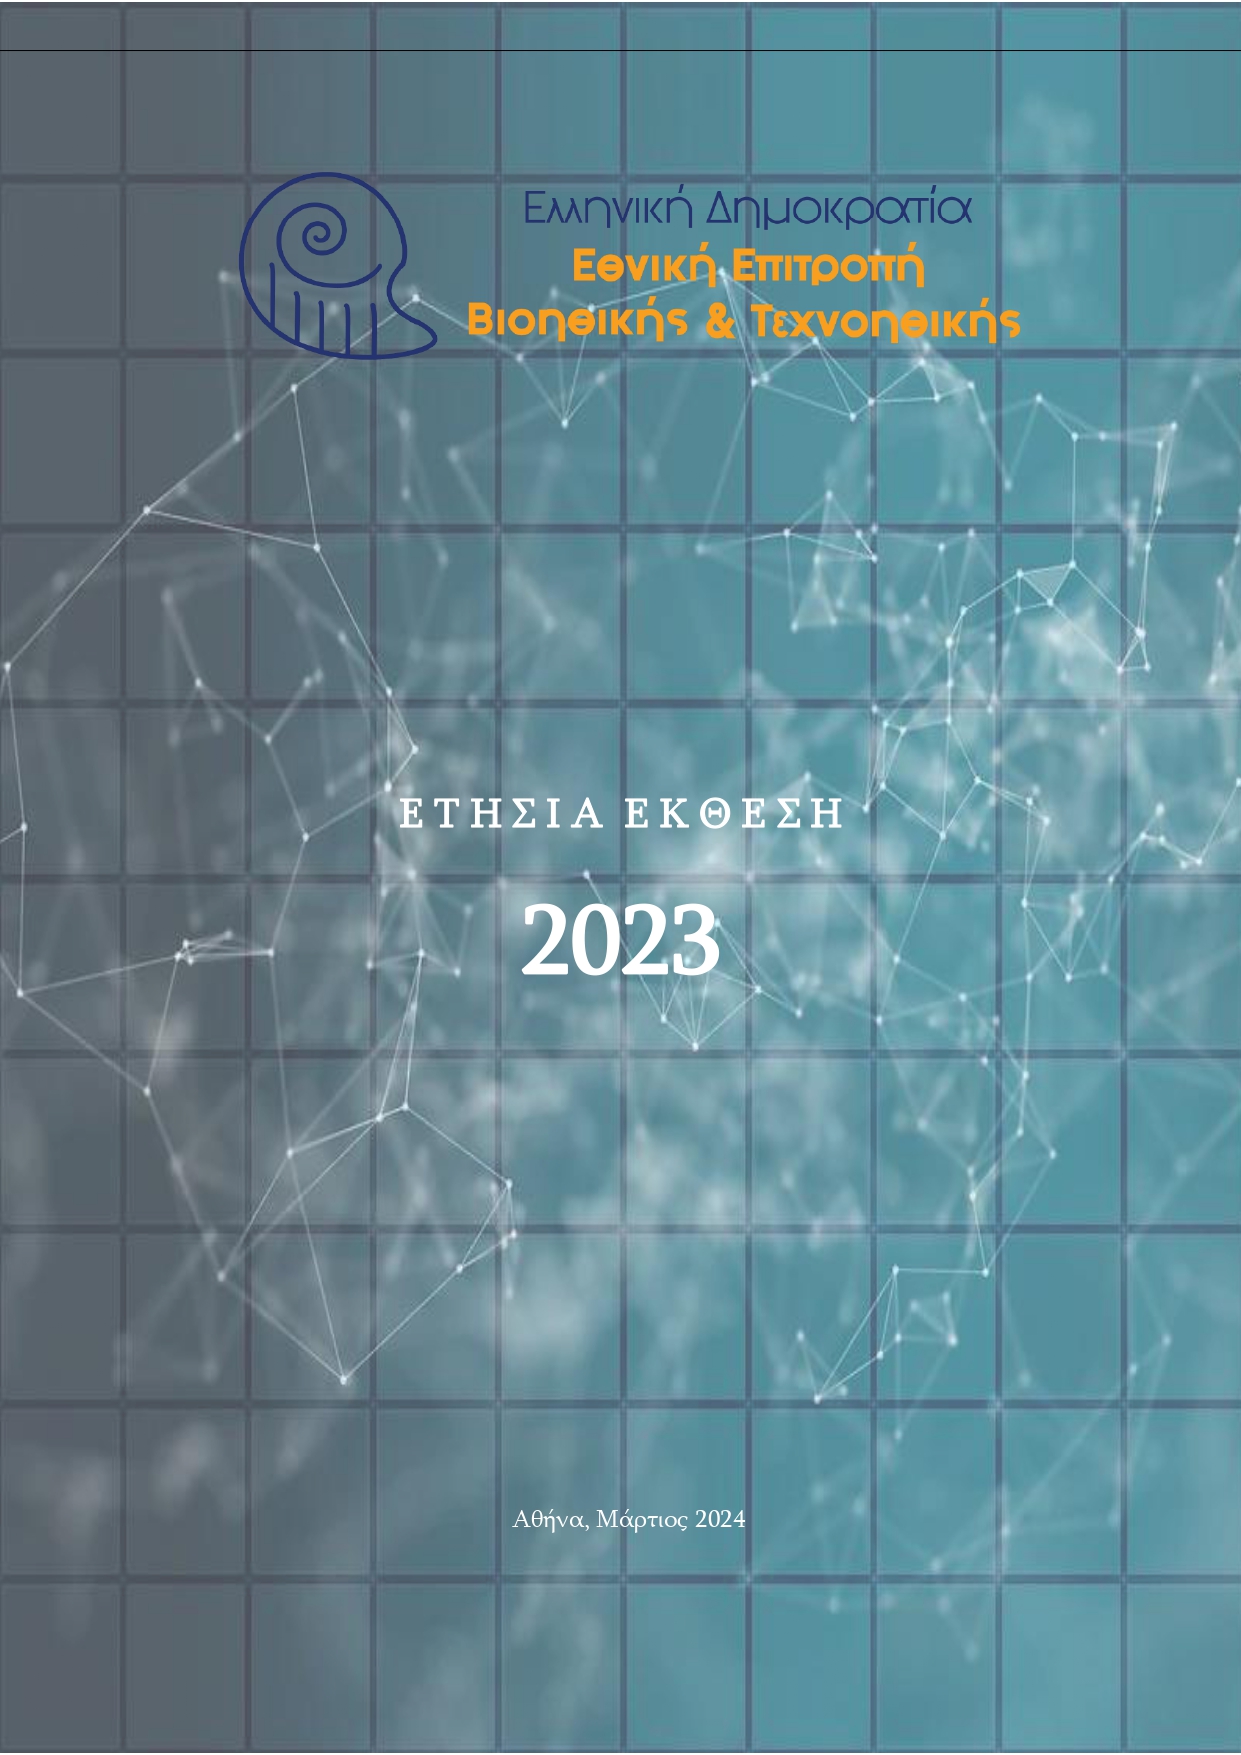 Eτήσια Έκθεση 2023